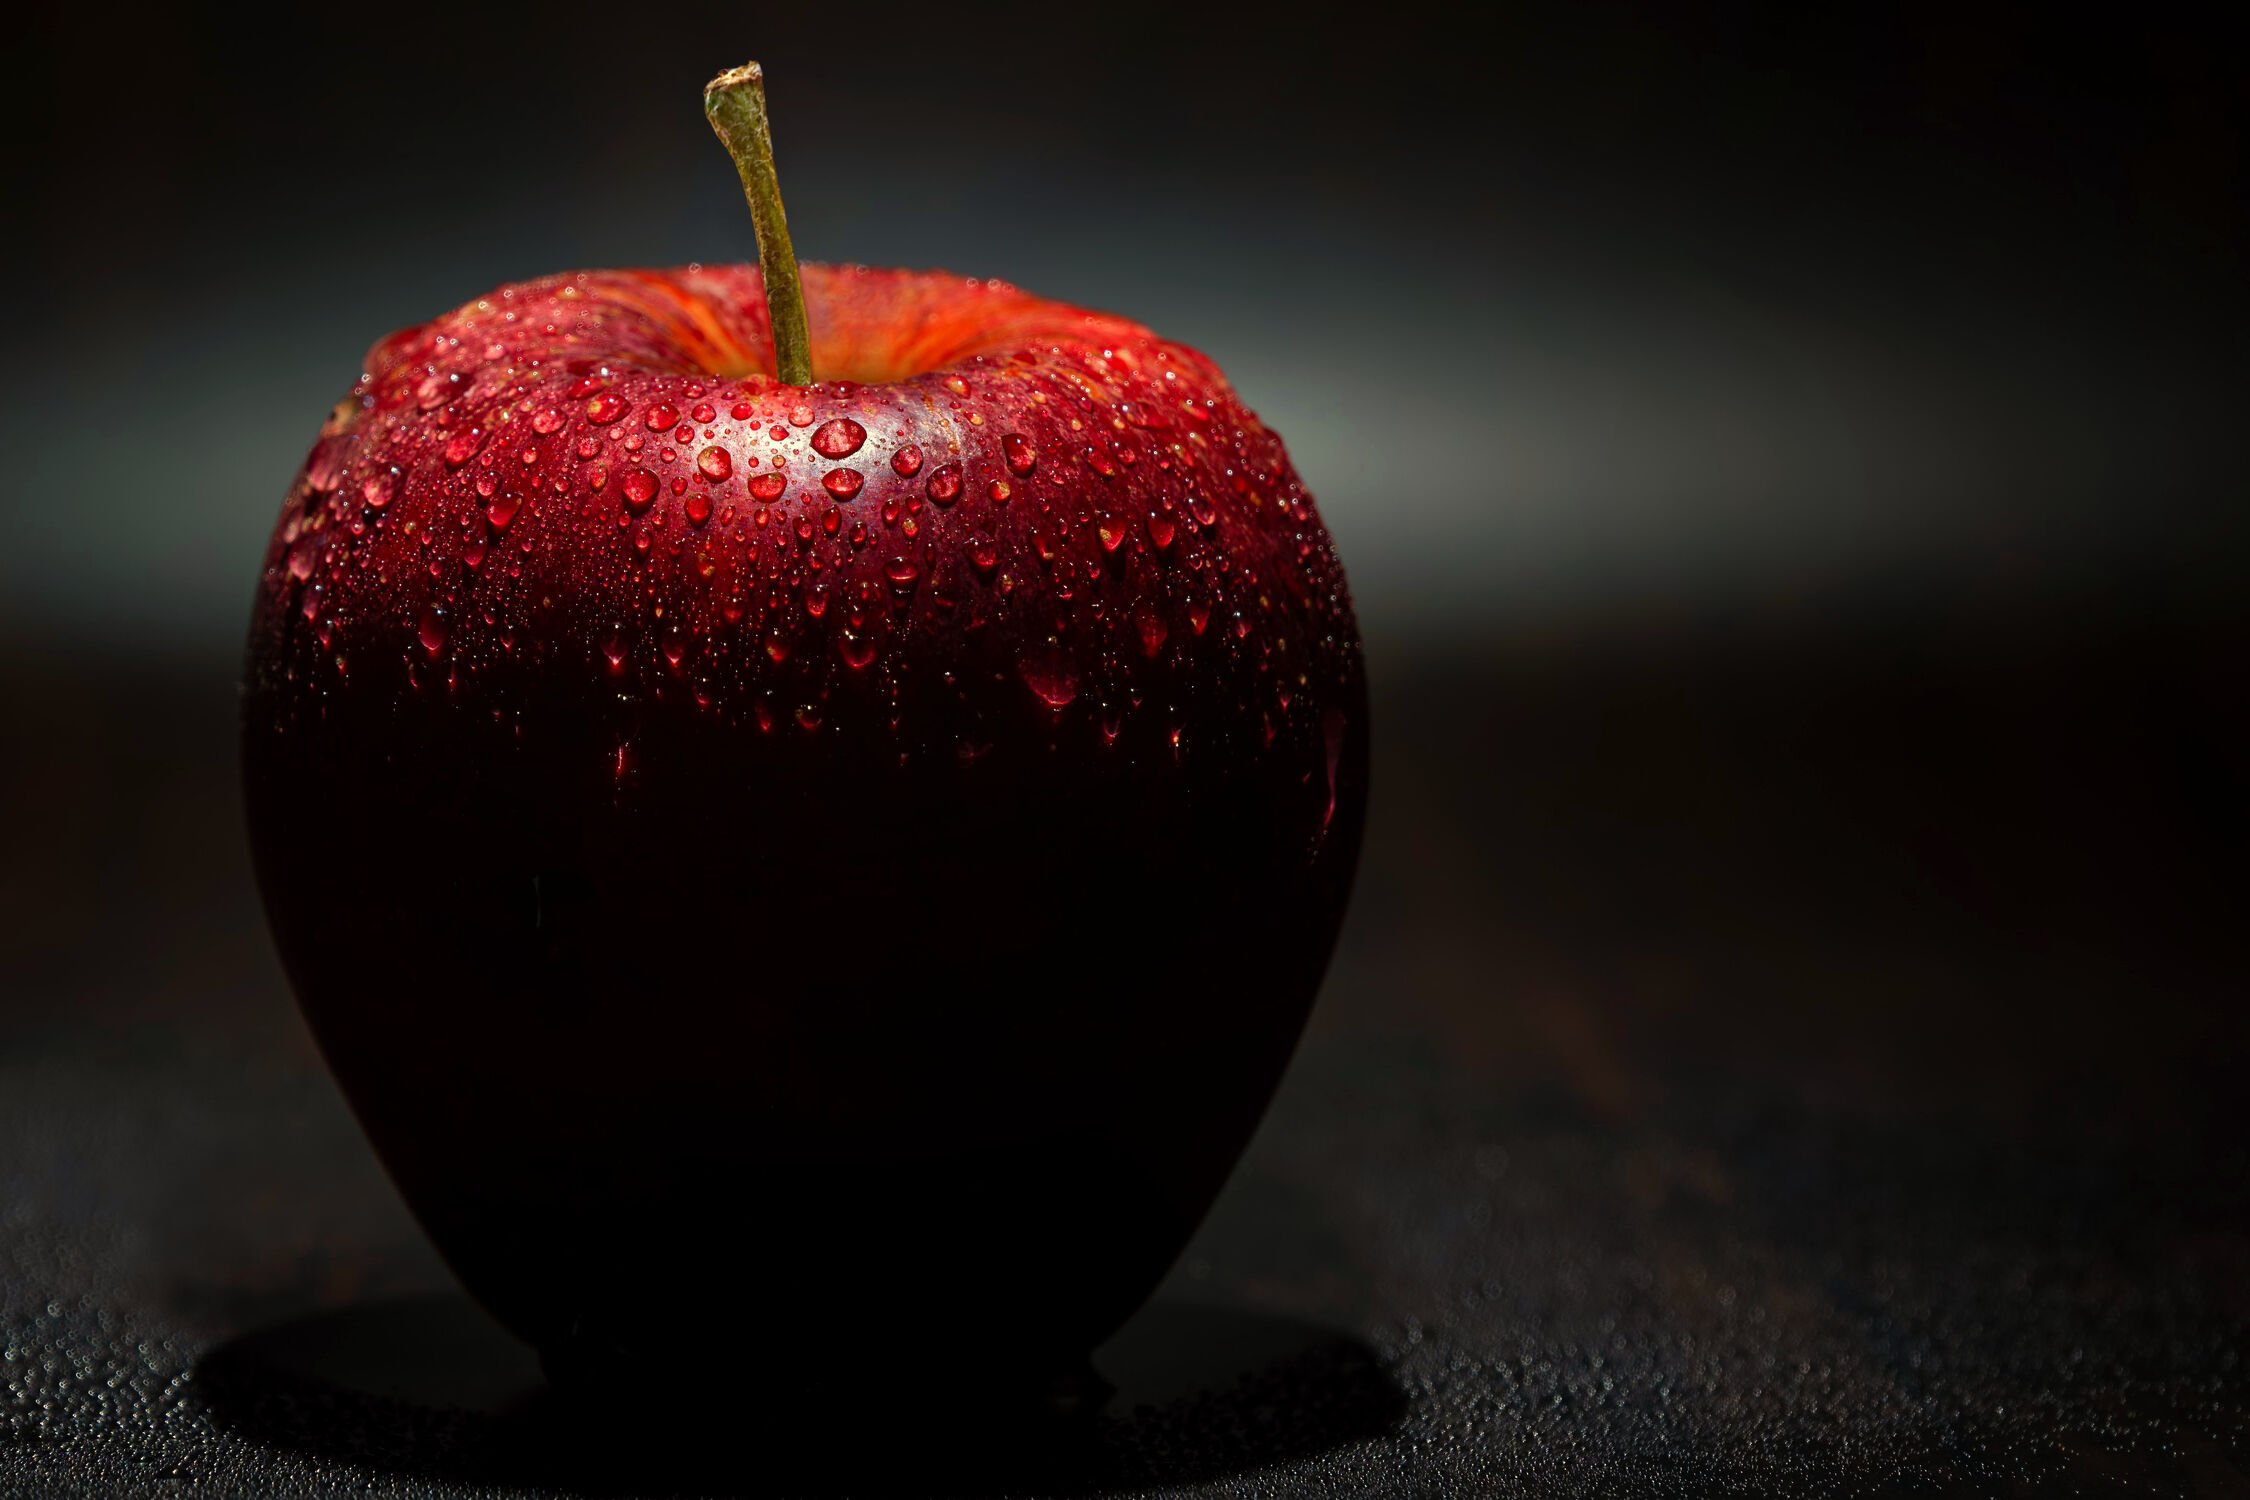 Bild mit Natur, Rot, nasser Apfel, Obst, Makro, Wassertropfen, Apfel, GESUND, nahaufnahme, hintergrund dunkel